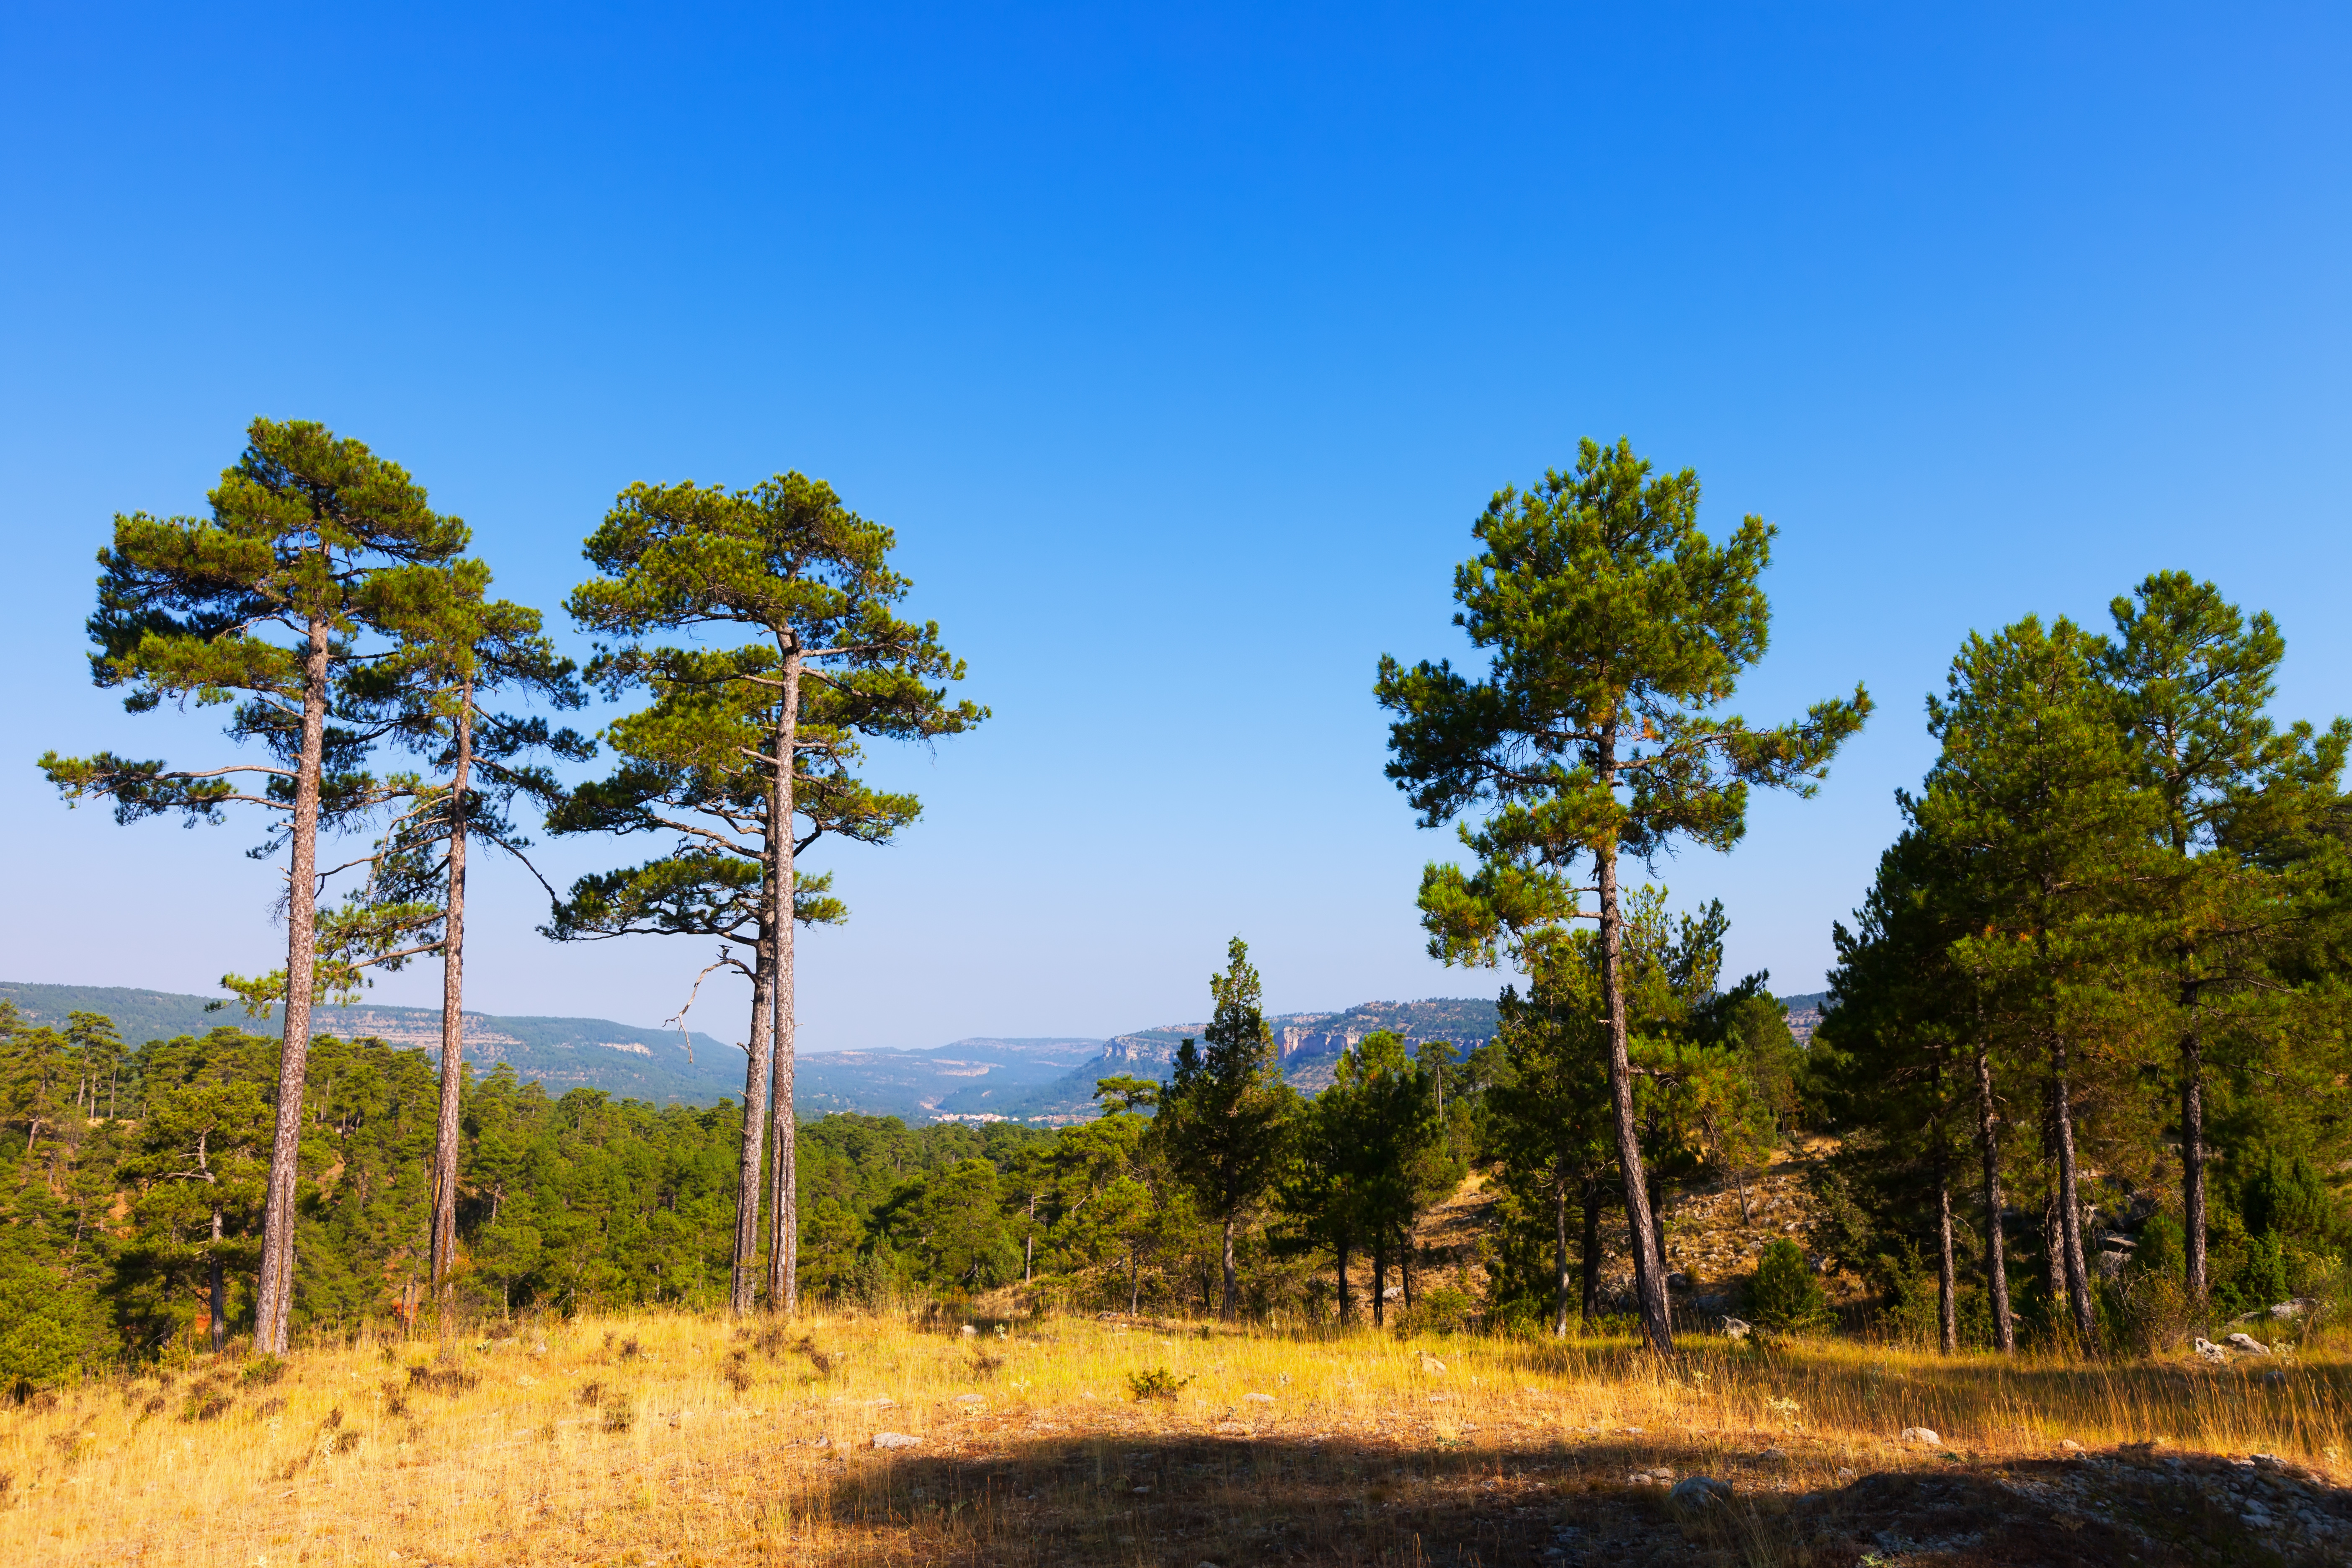 야생의 산에 심어져 있는 커다란 소나무들과 들판, 그리고 멀리 보이는 산들을 배경으로 하는 풍경 사진